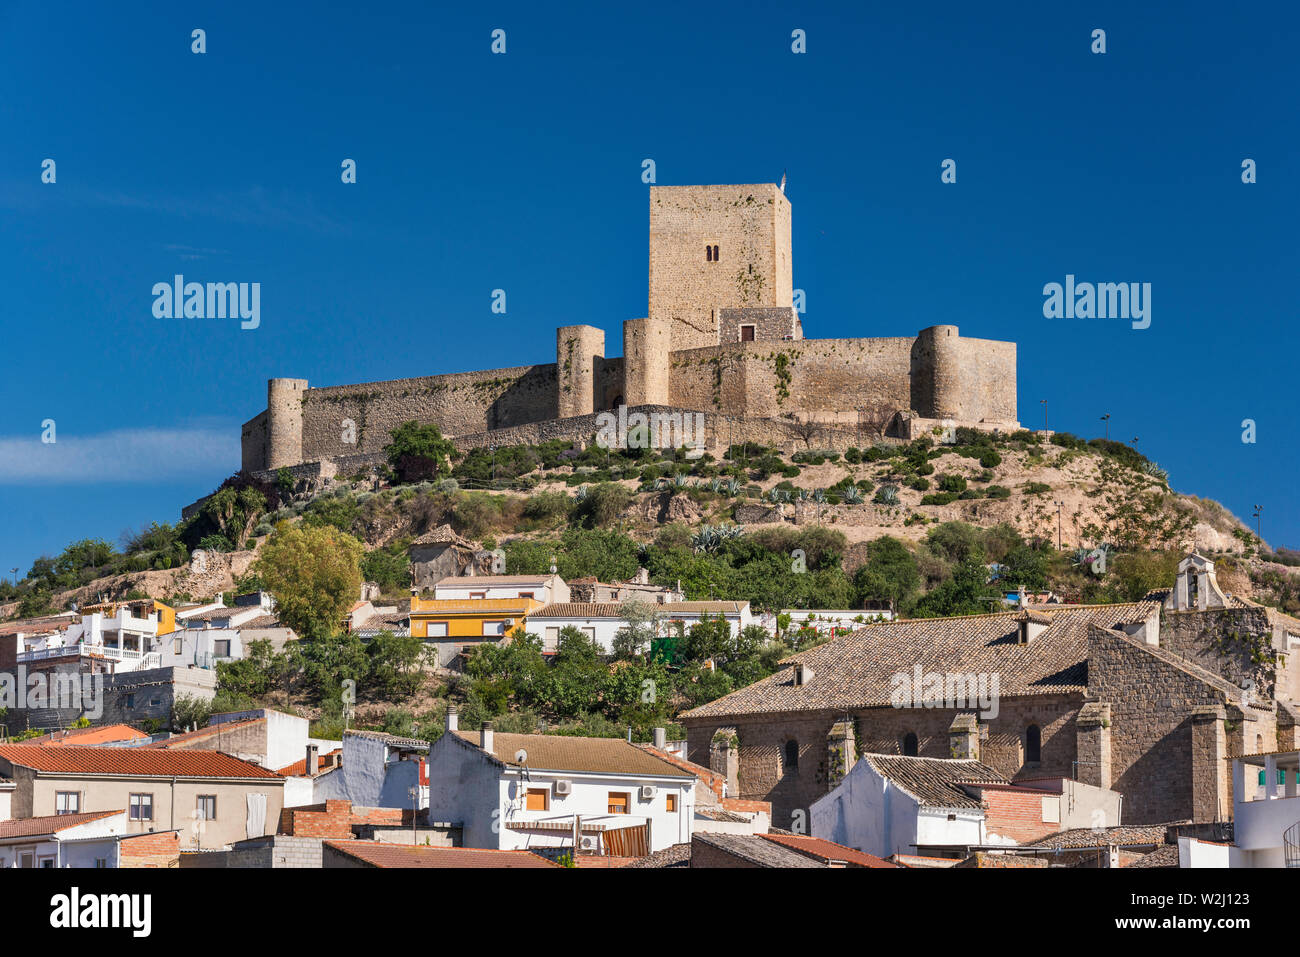 Castillo de Alcaudete, castello moresco, XI-XIV secolo sulla collina sopra la città di Alcaudete, Provincia di Jaen, Andalusia, Spagna Foto Stock